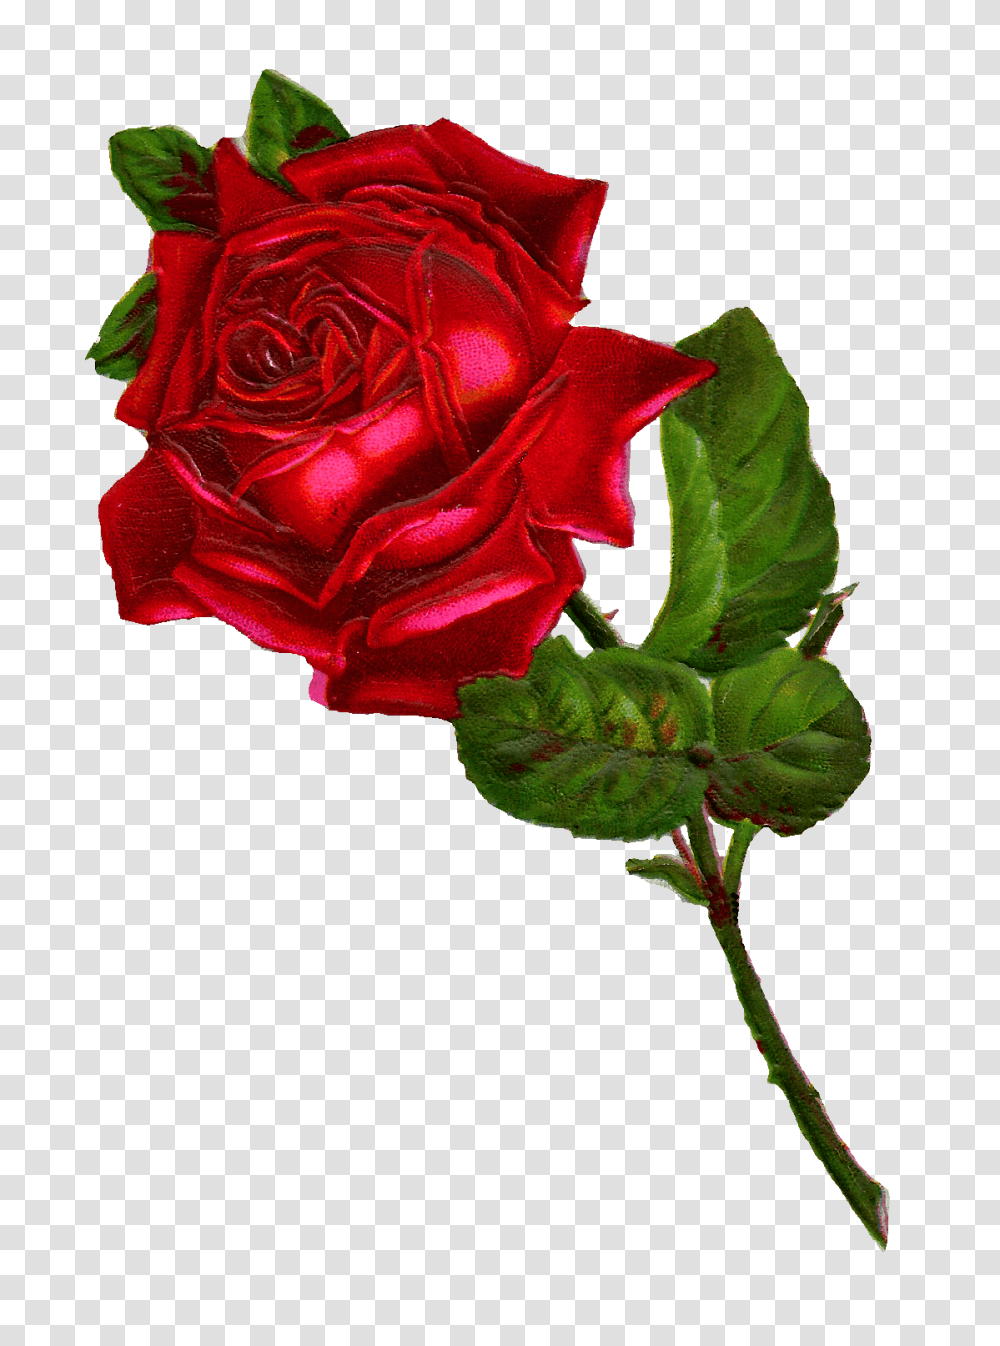 Antique Images Stock Red Rose Digital Clip Art, Flower, Plant, Blossom Transparent Png